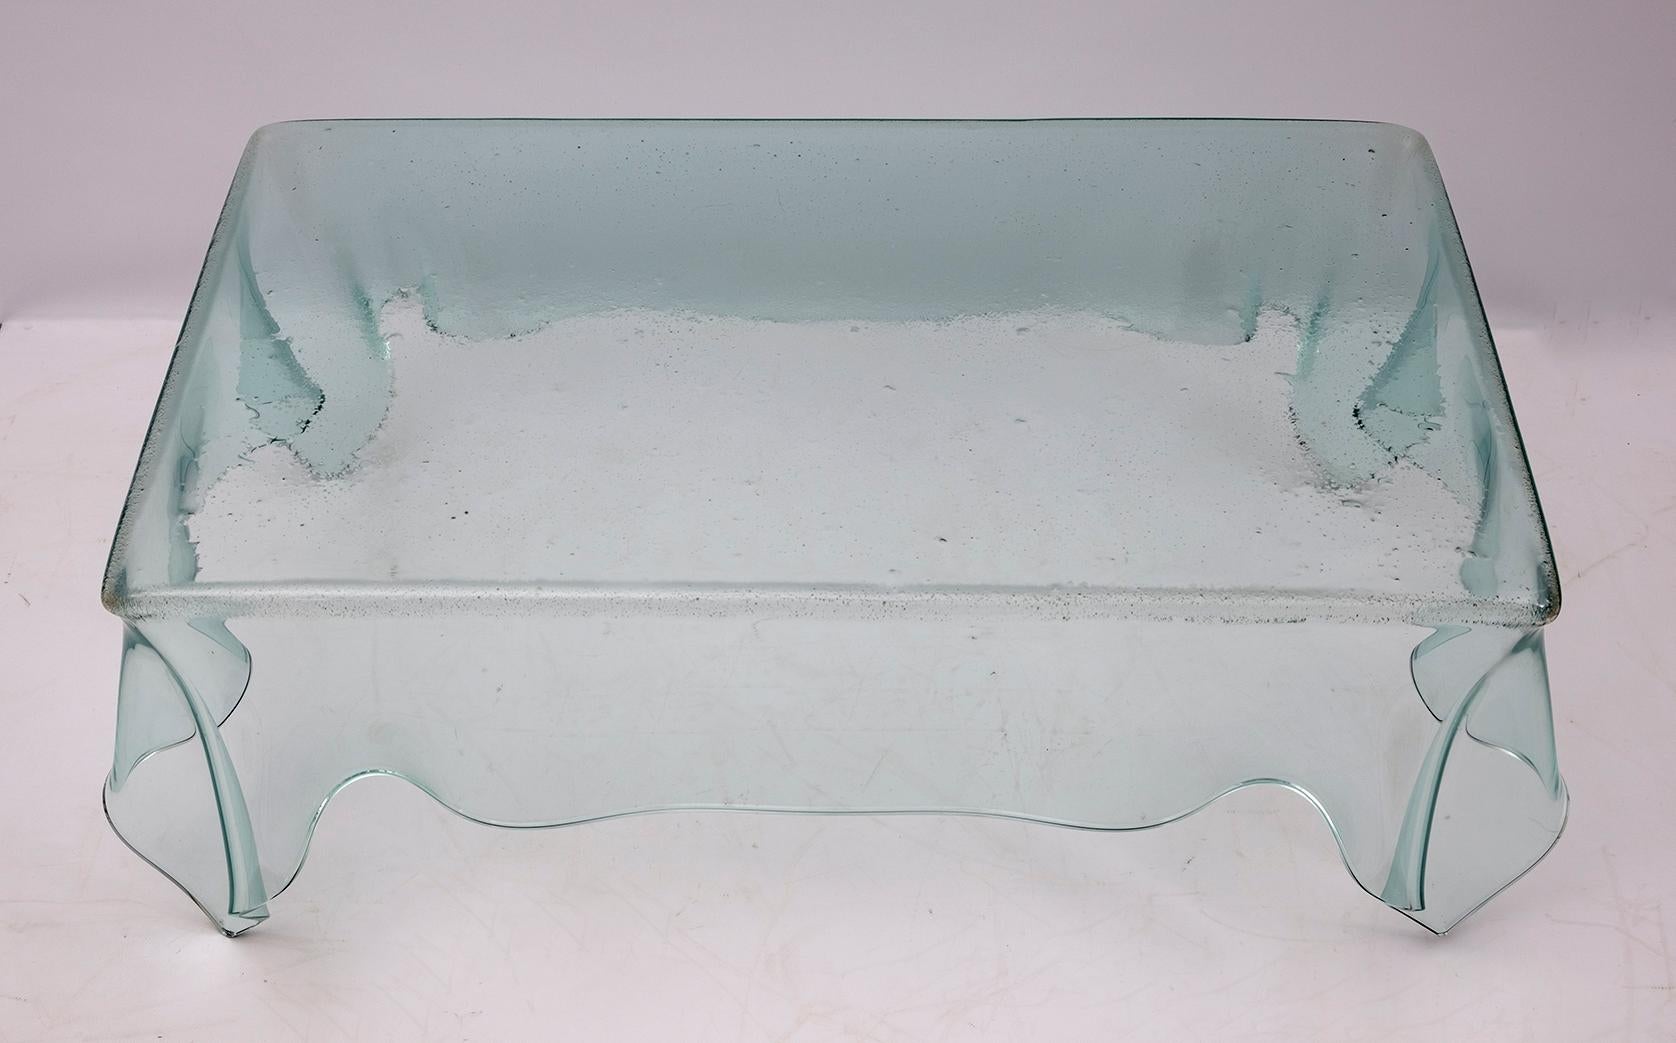 Kristalltaschentuch, hergestellt in Italien in den 1980er Jahren, wahrscheinlich von FIAM.
Maße des Oberteils 102 x 62 cm.